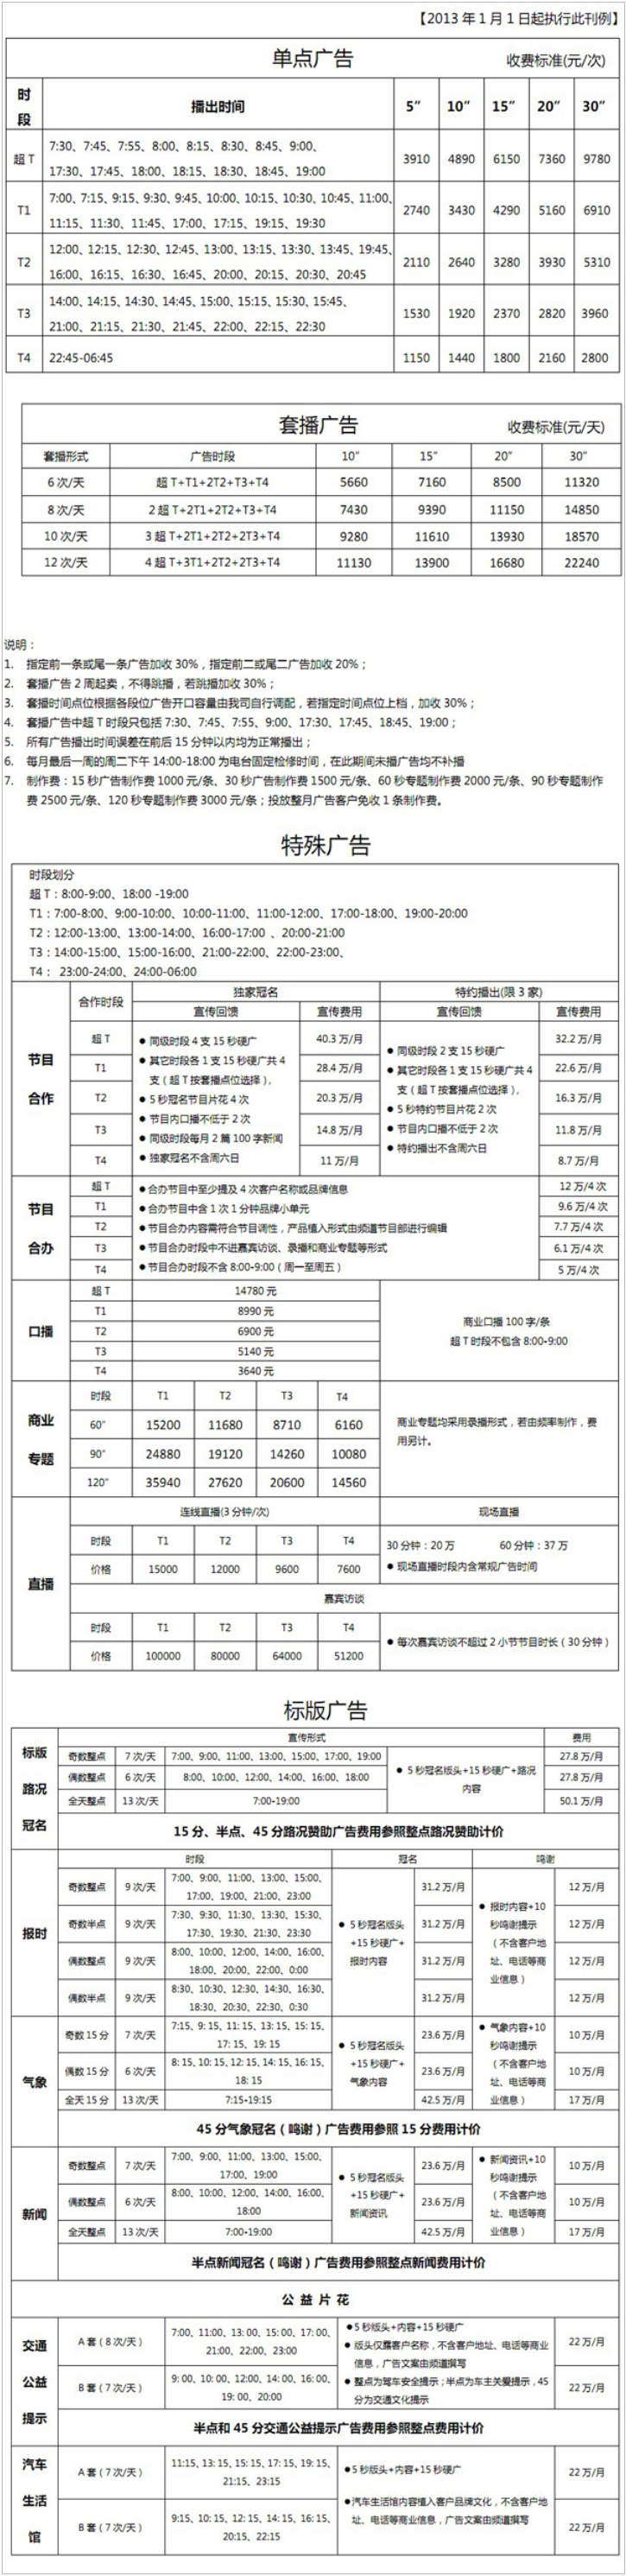 2013四川人民广播电台交通广播 FM101.7广告报价表.png